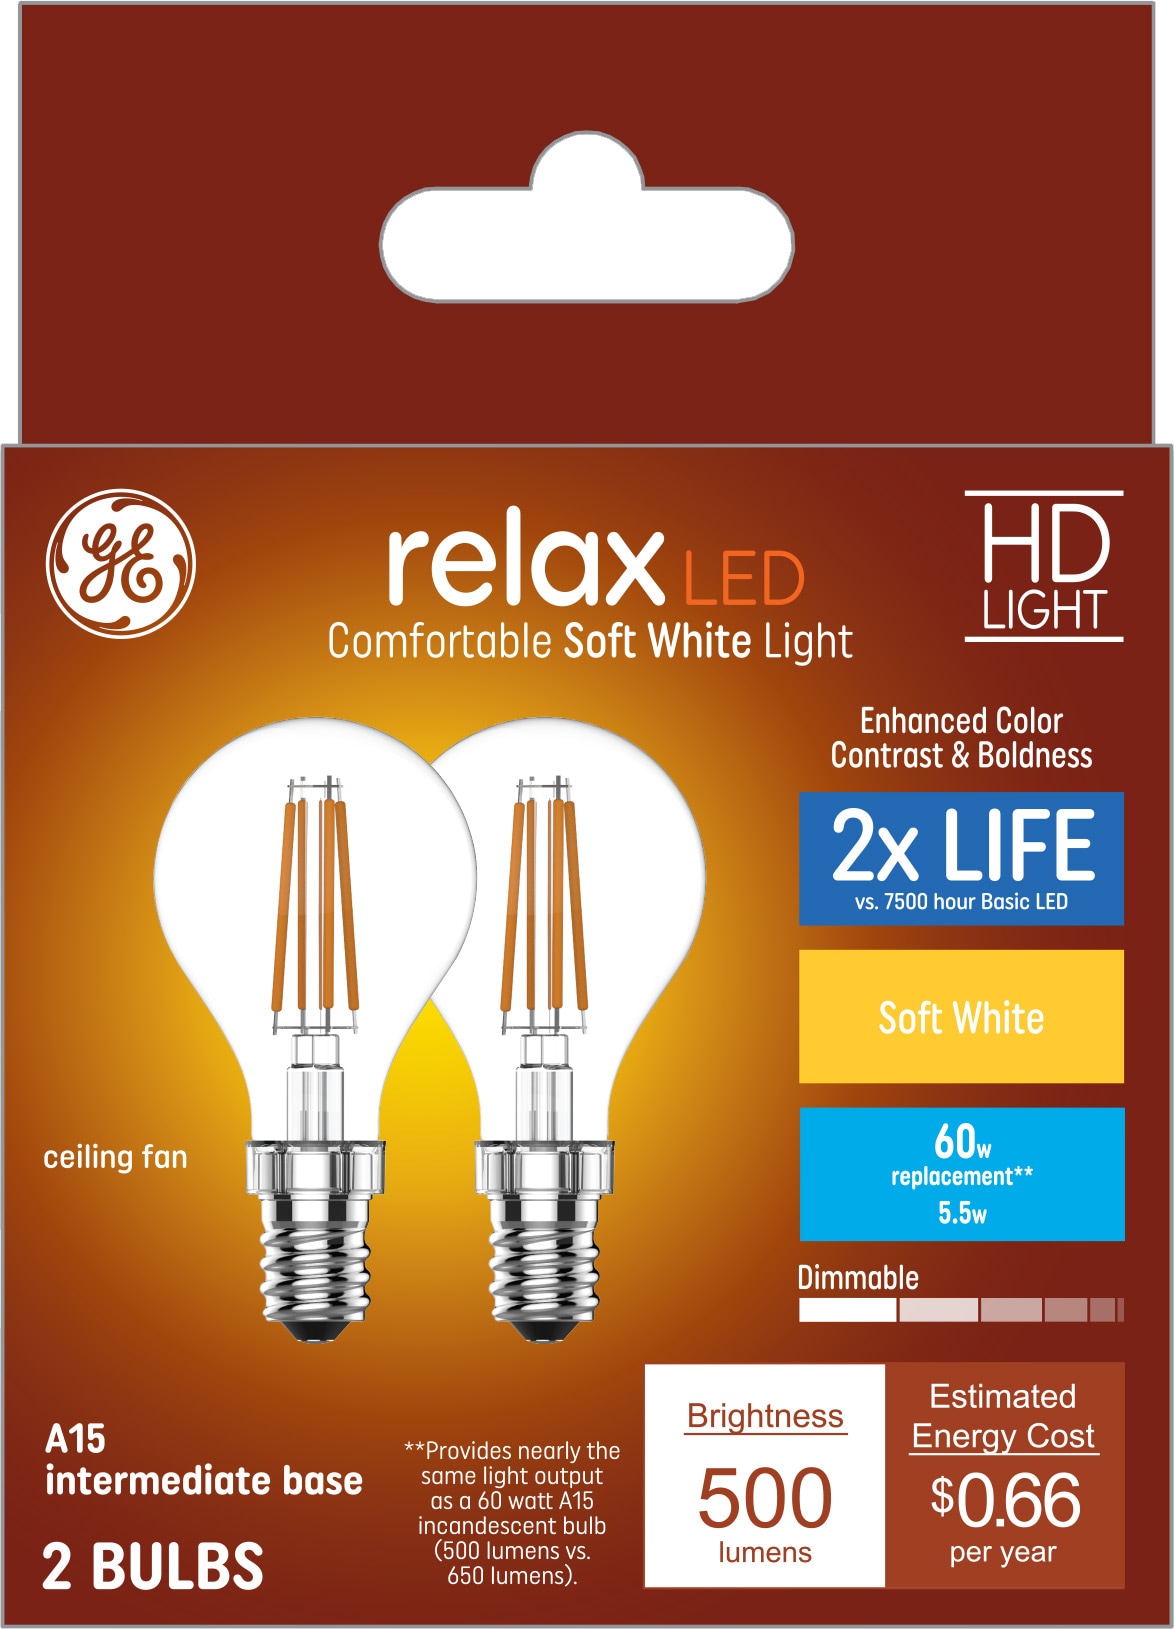 GE LED DAY REFRIG, Batteries & Lighting